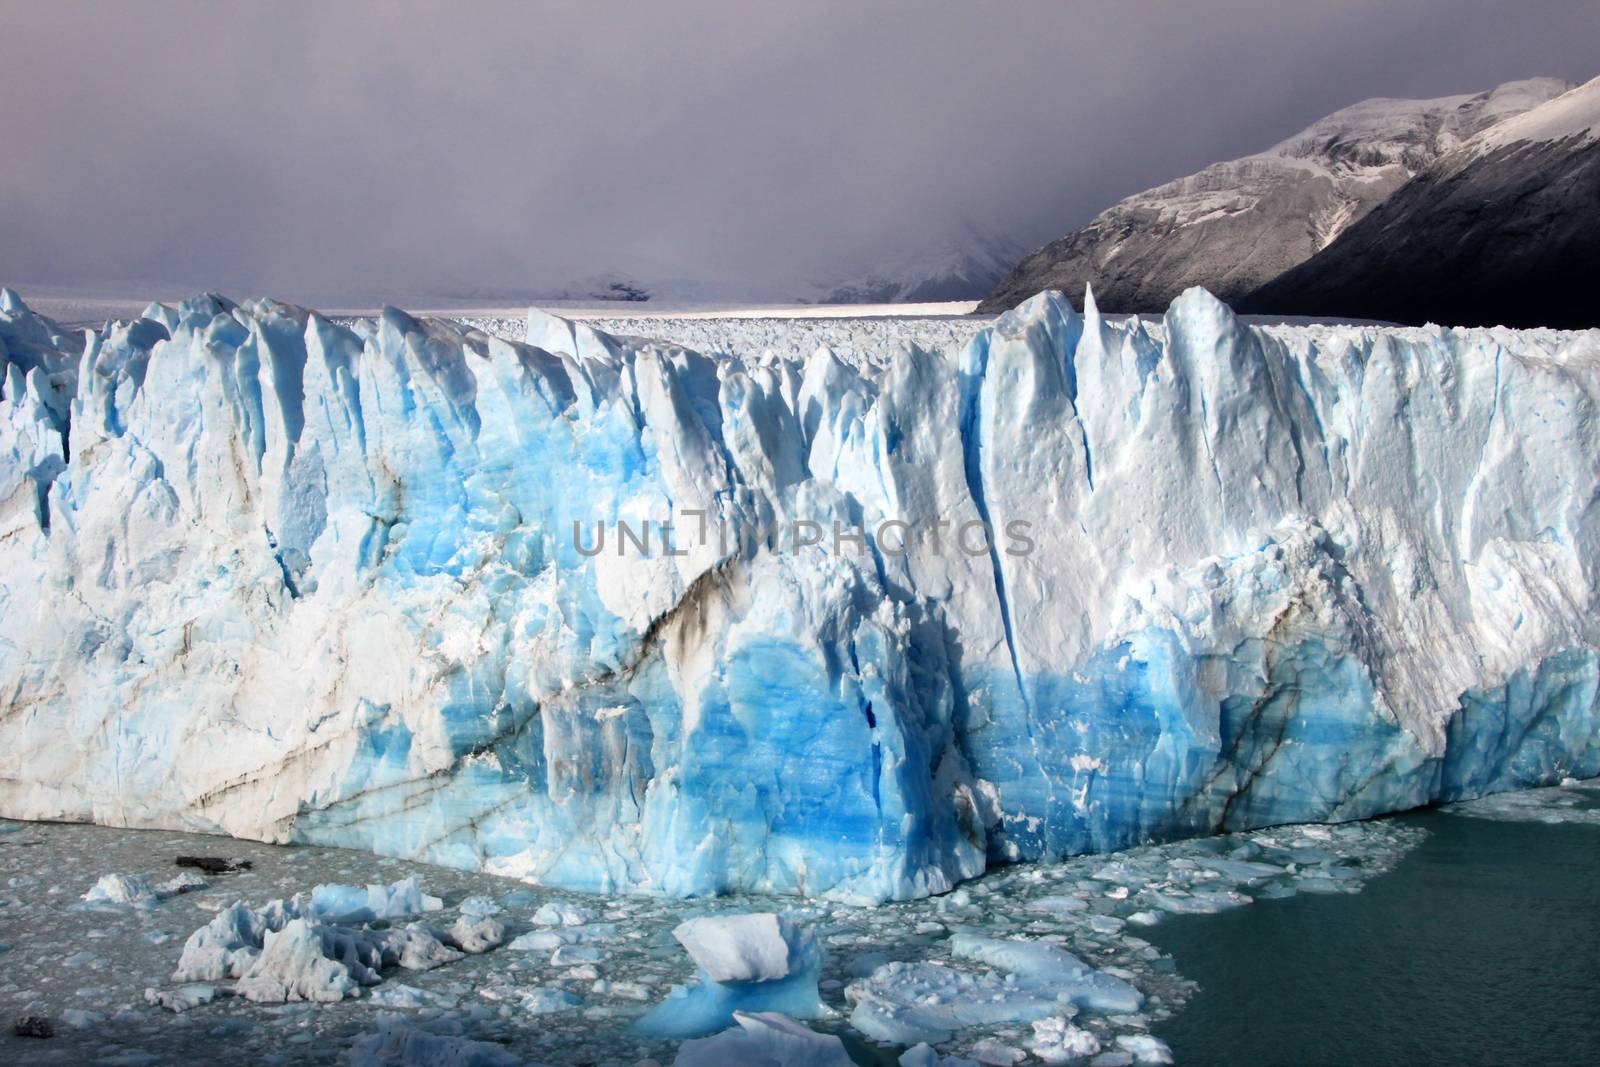 Perito Moreno glacier, Patagonia, Argentina by cicloco